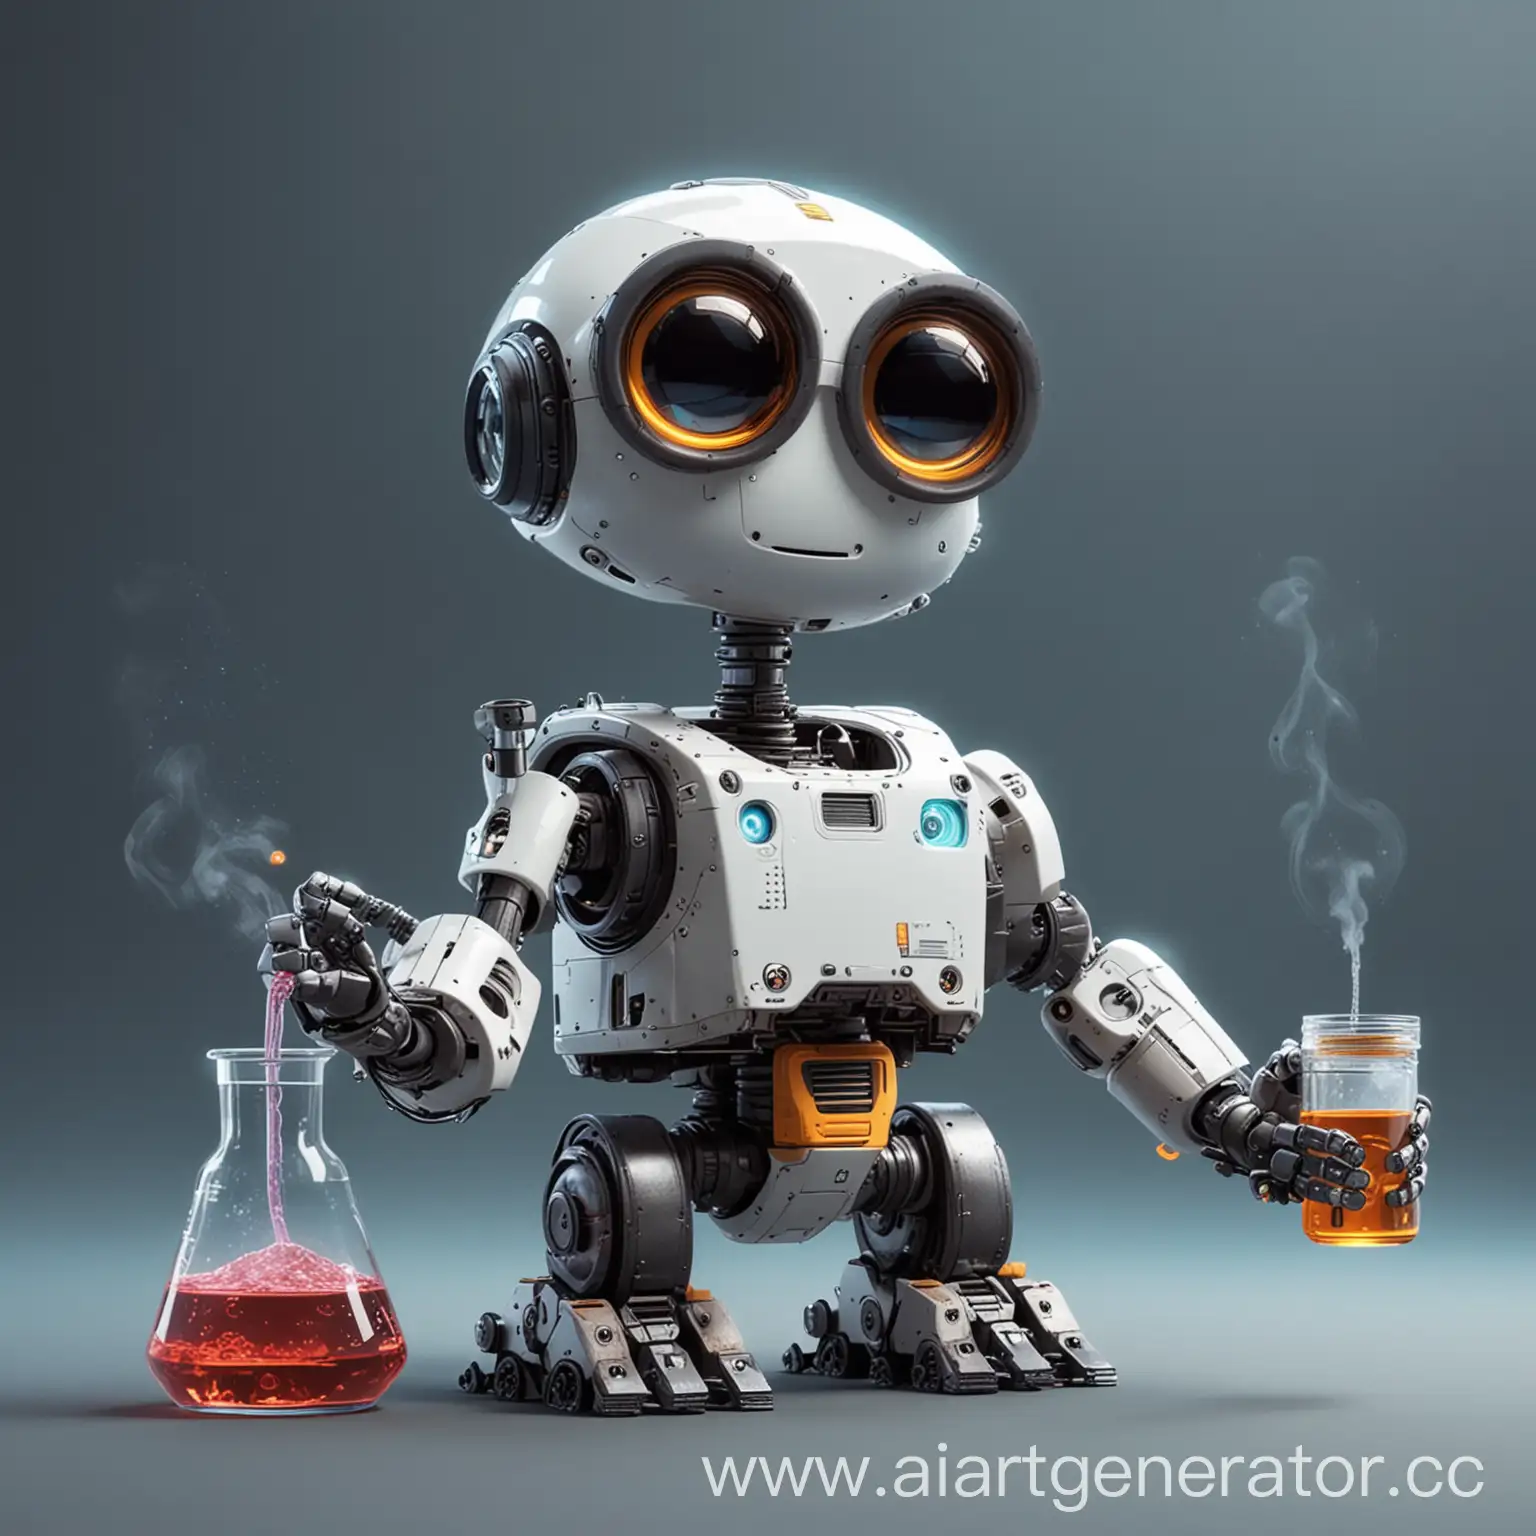 милый робот проводит химический эксперимент в стиле мультика киберпанк. робот как из мультика валли
